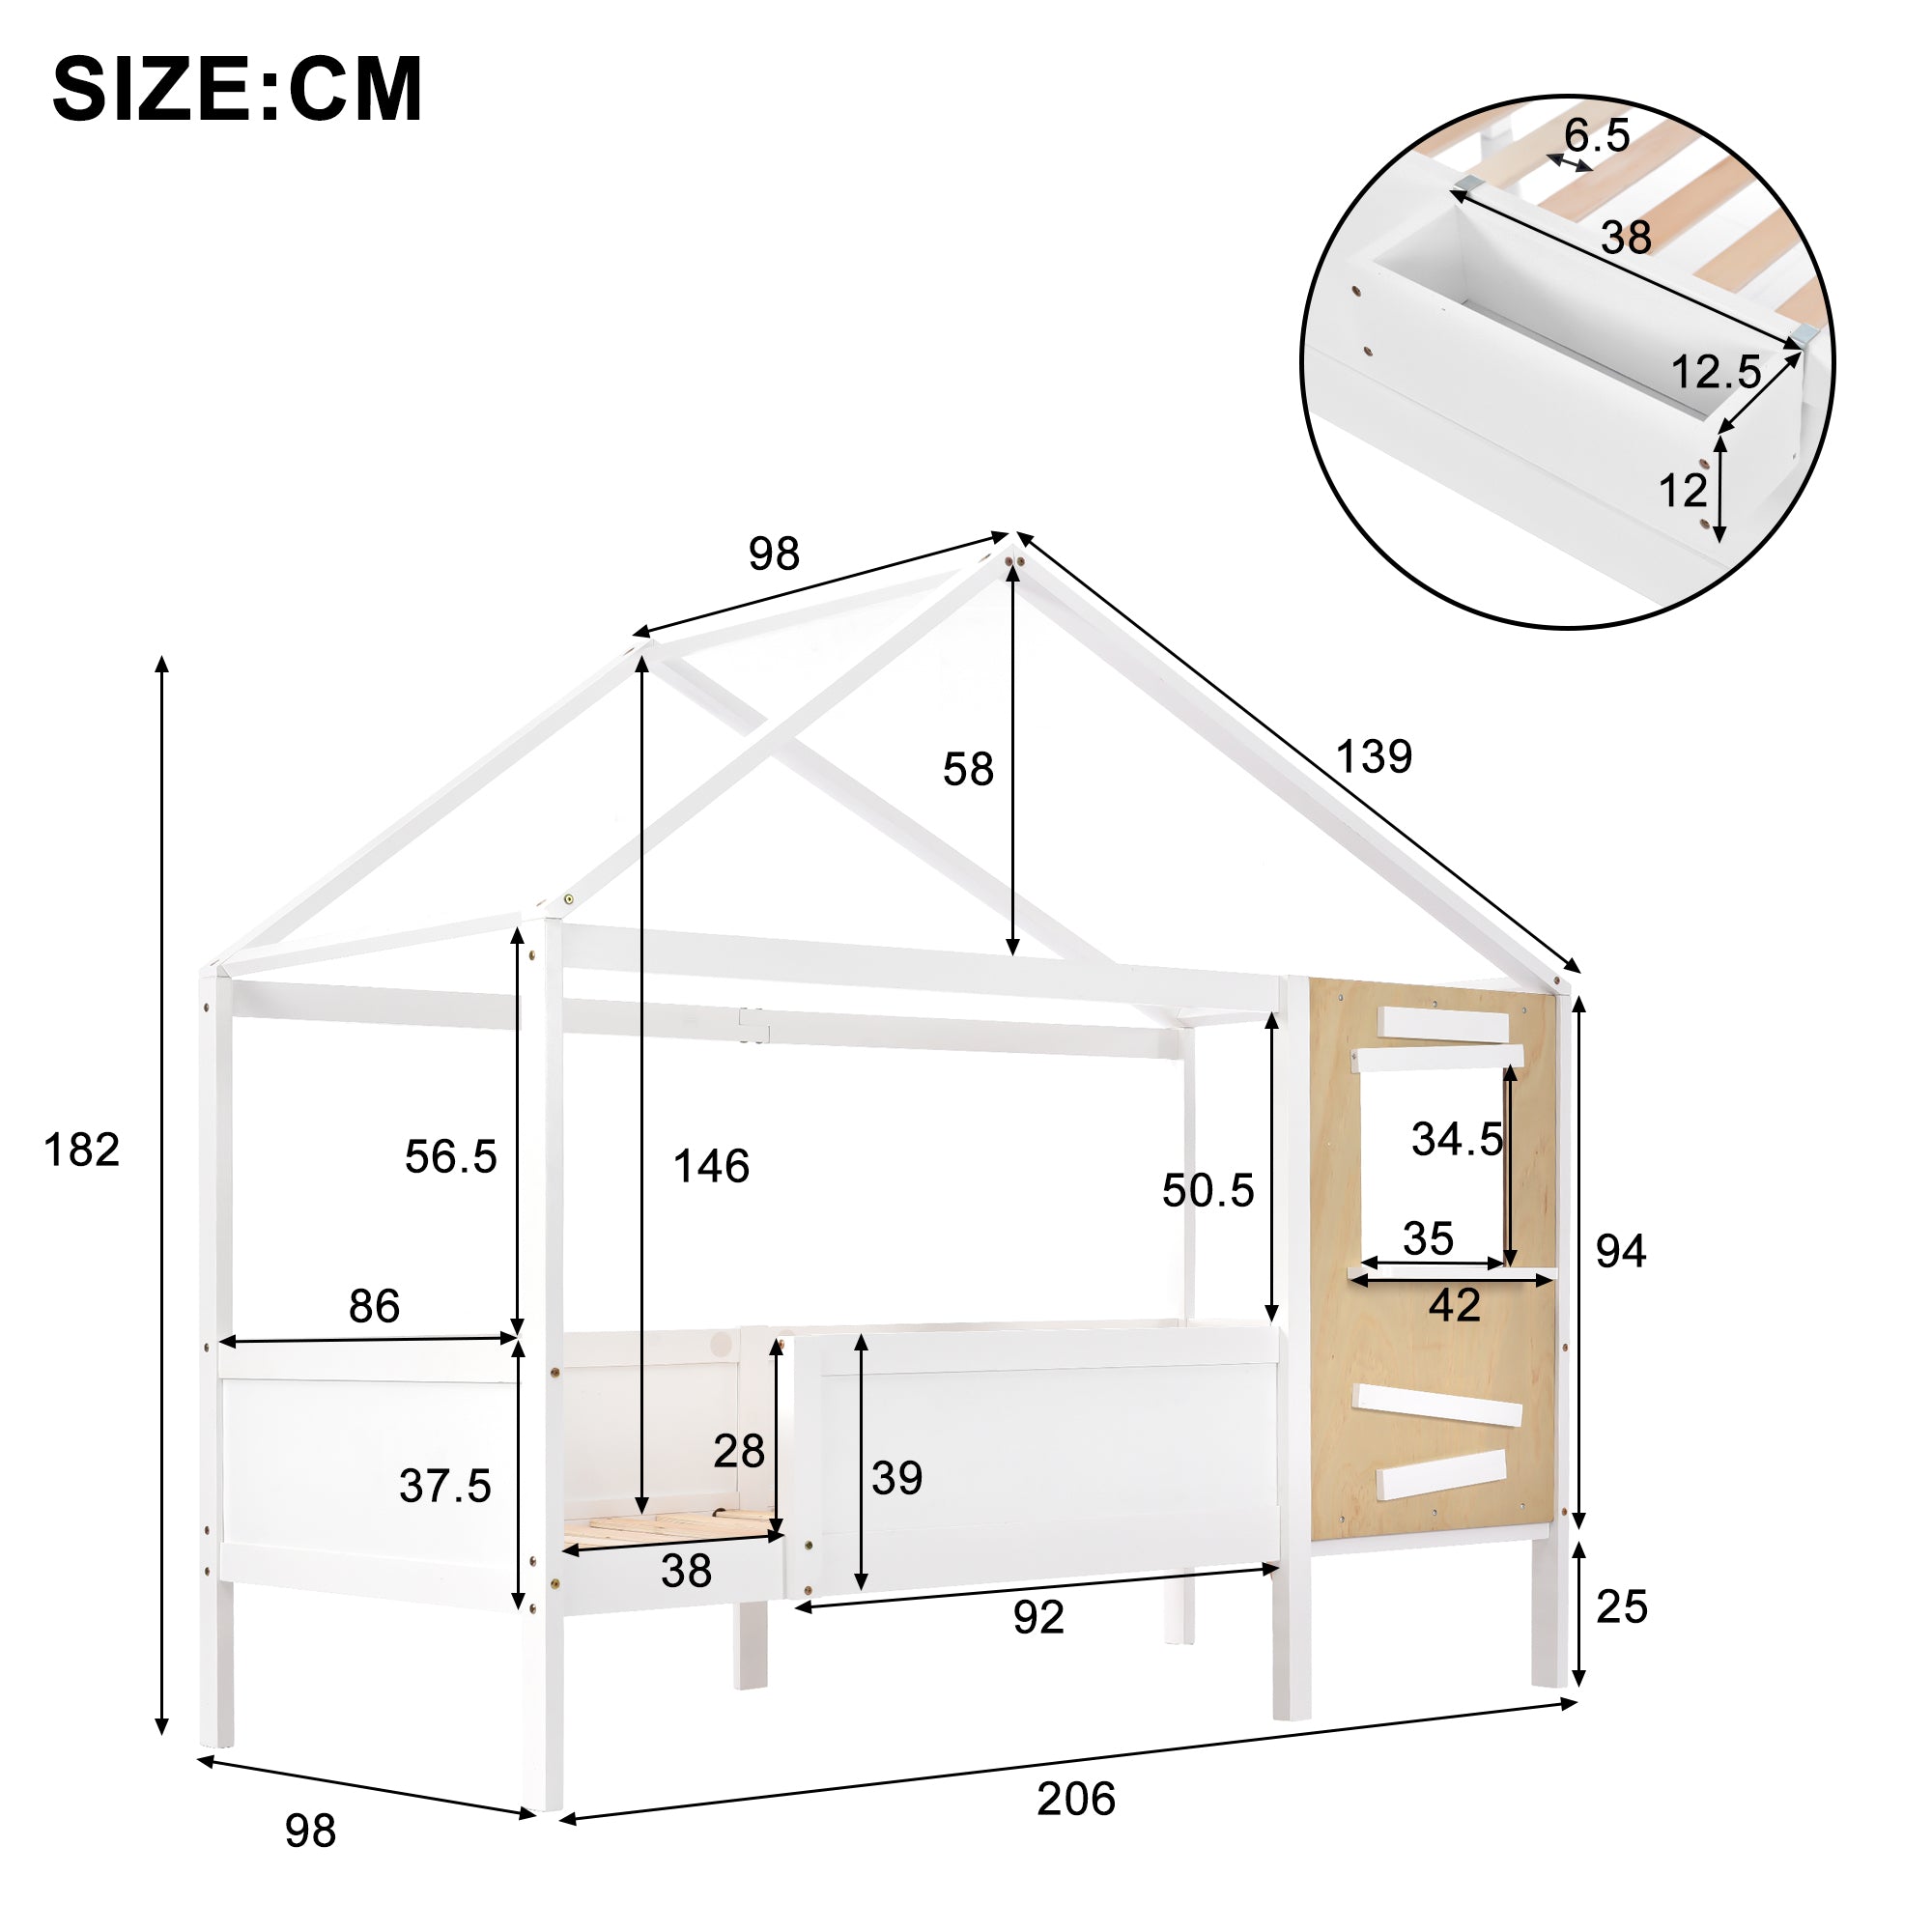 Hausbett, Kinderbett mit Fenster, mit kleiner Holzkiste, Rahmen aus Kiefer, Schutzplatte aus MDF, weiß (200x90cm)